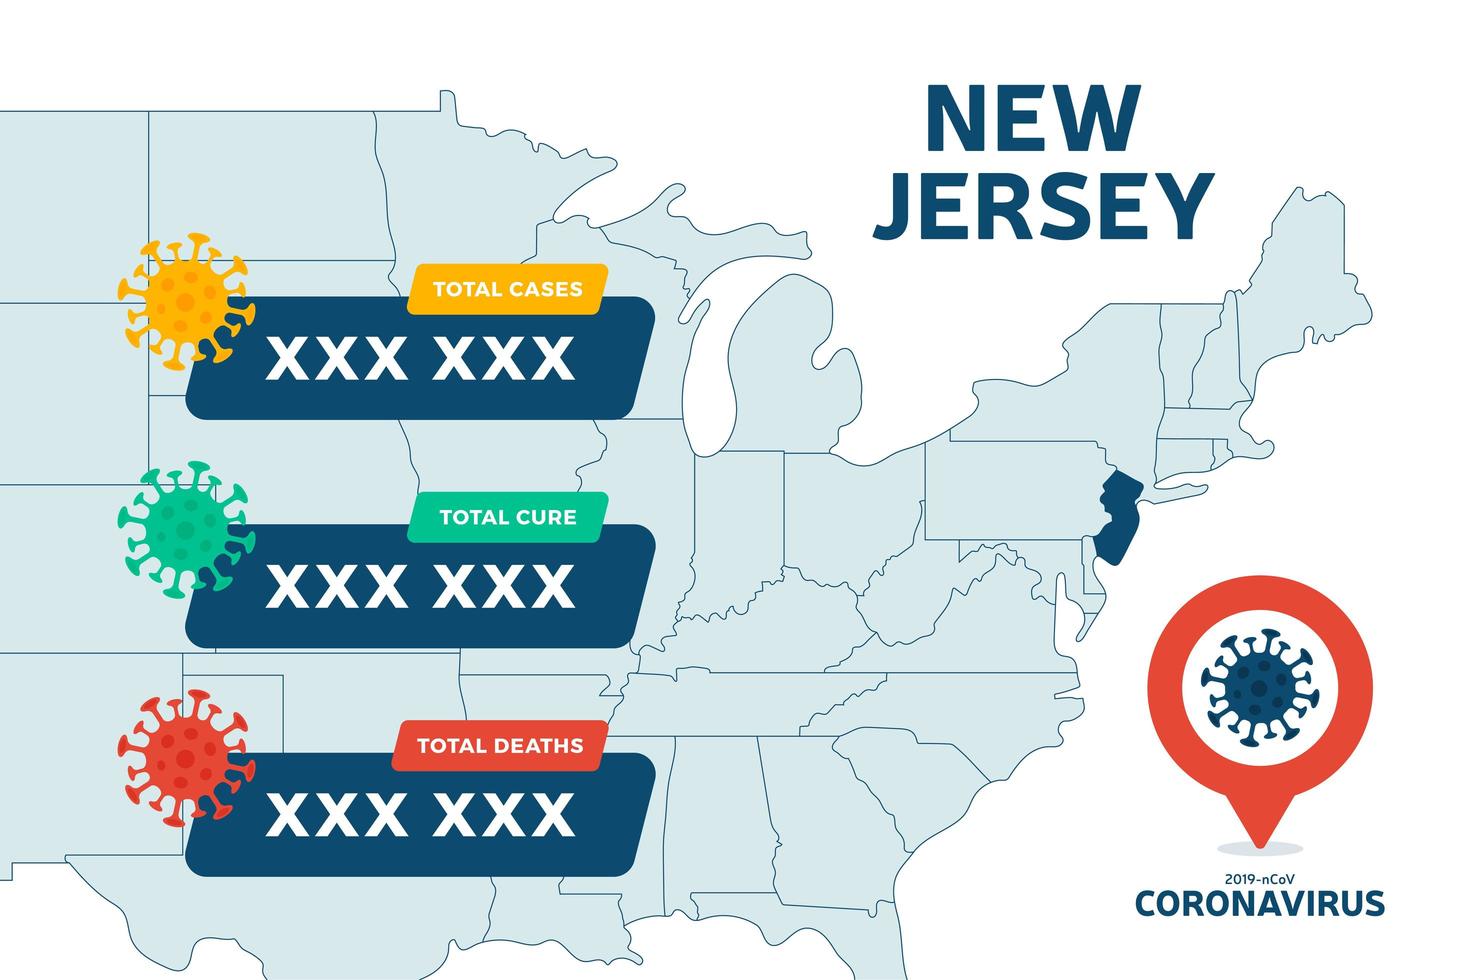 Covid-19 New Jersey State USA Karte bestätigte Fälle, Heilung, Todesfälle Bericht. Coronavirus-Krankheit 2019 Situations-Update weltweit. Amerika Karten und Nachrichten Schlagzeile zeigen Situation und Statistiken Hintergrund vektor